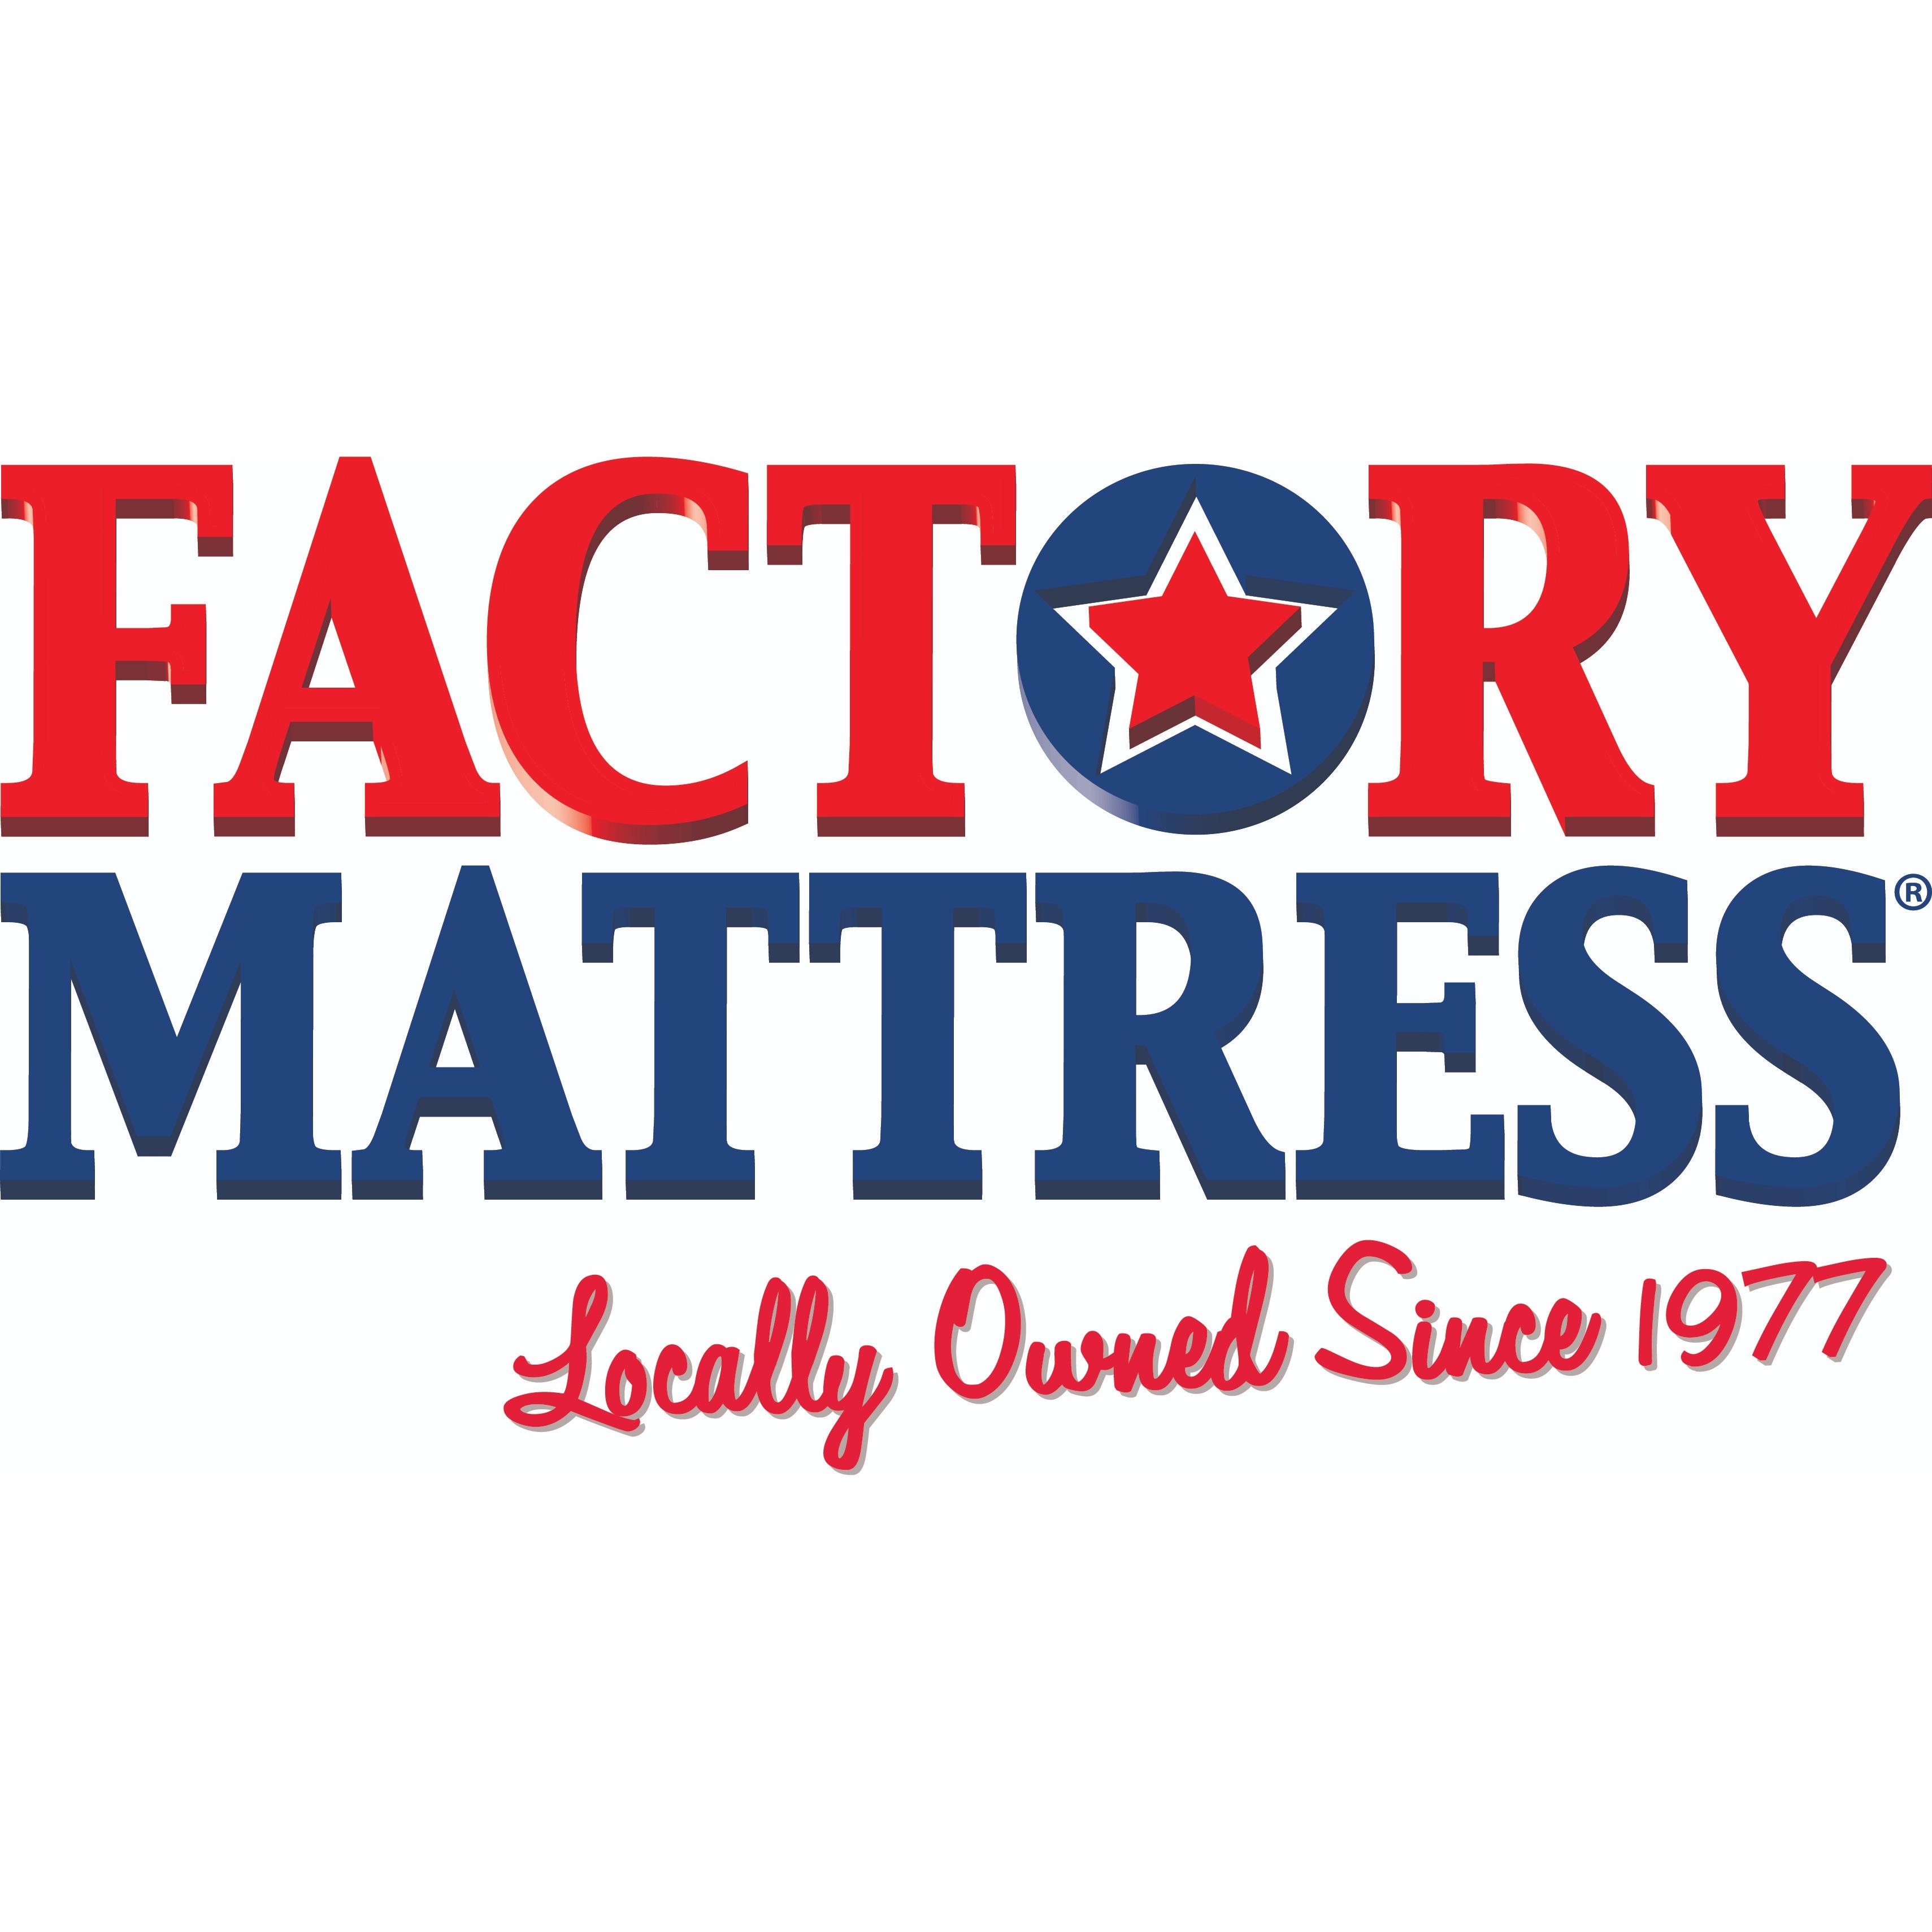 Factory Mattress Logo